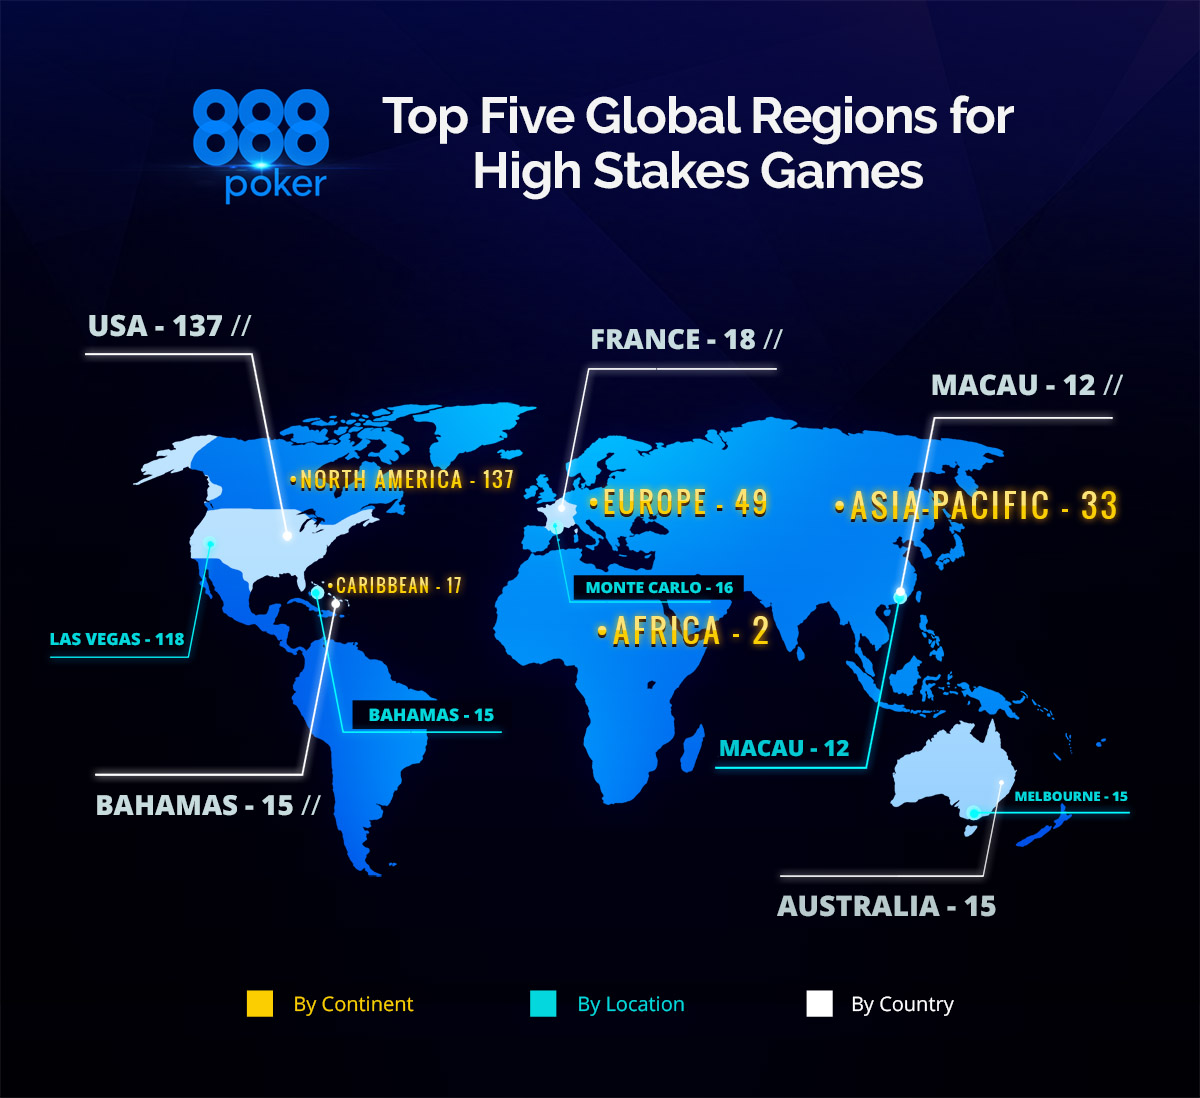 A continuación, las cinco principales regiones globales para juegos de grandes apuestas